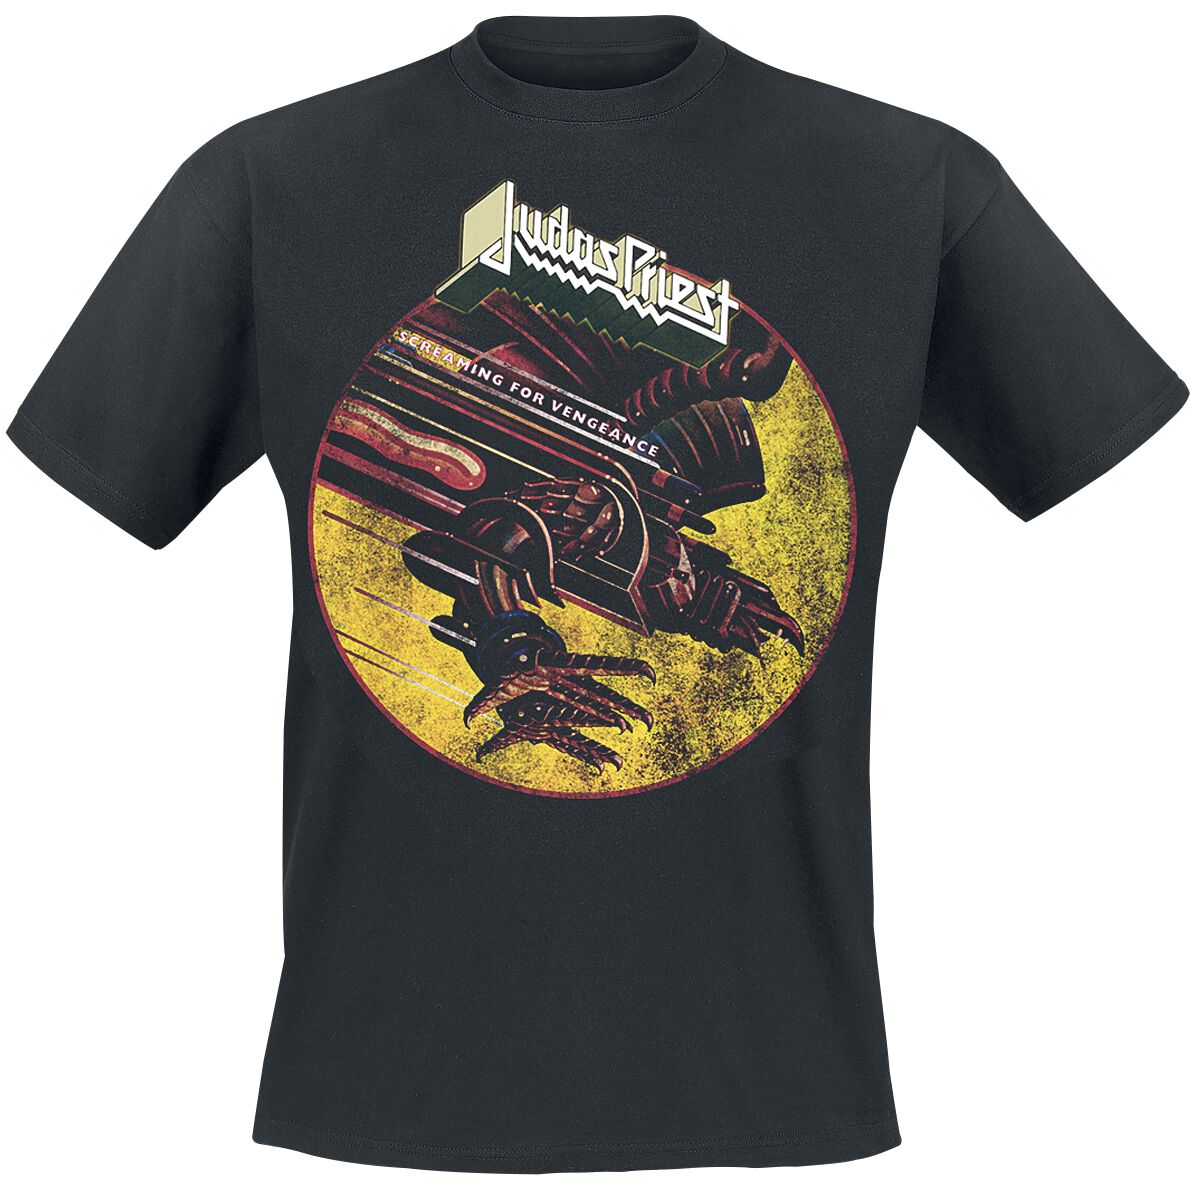 Judas Priest T-Shirt - SFV Distressed - M bis XXL - für Männer - Größe M - schwarz  - Lizenziertes Merchandise!